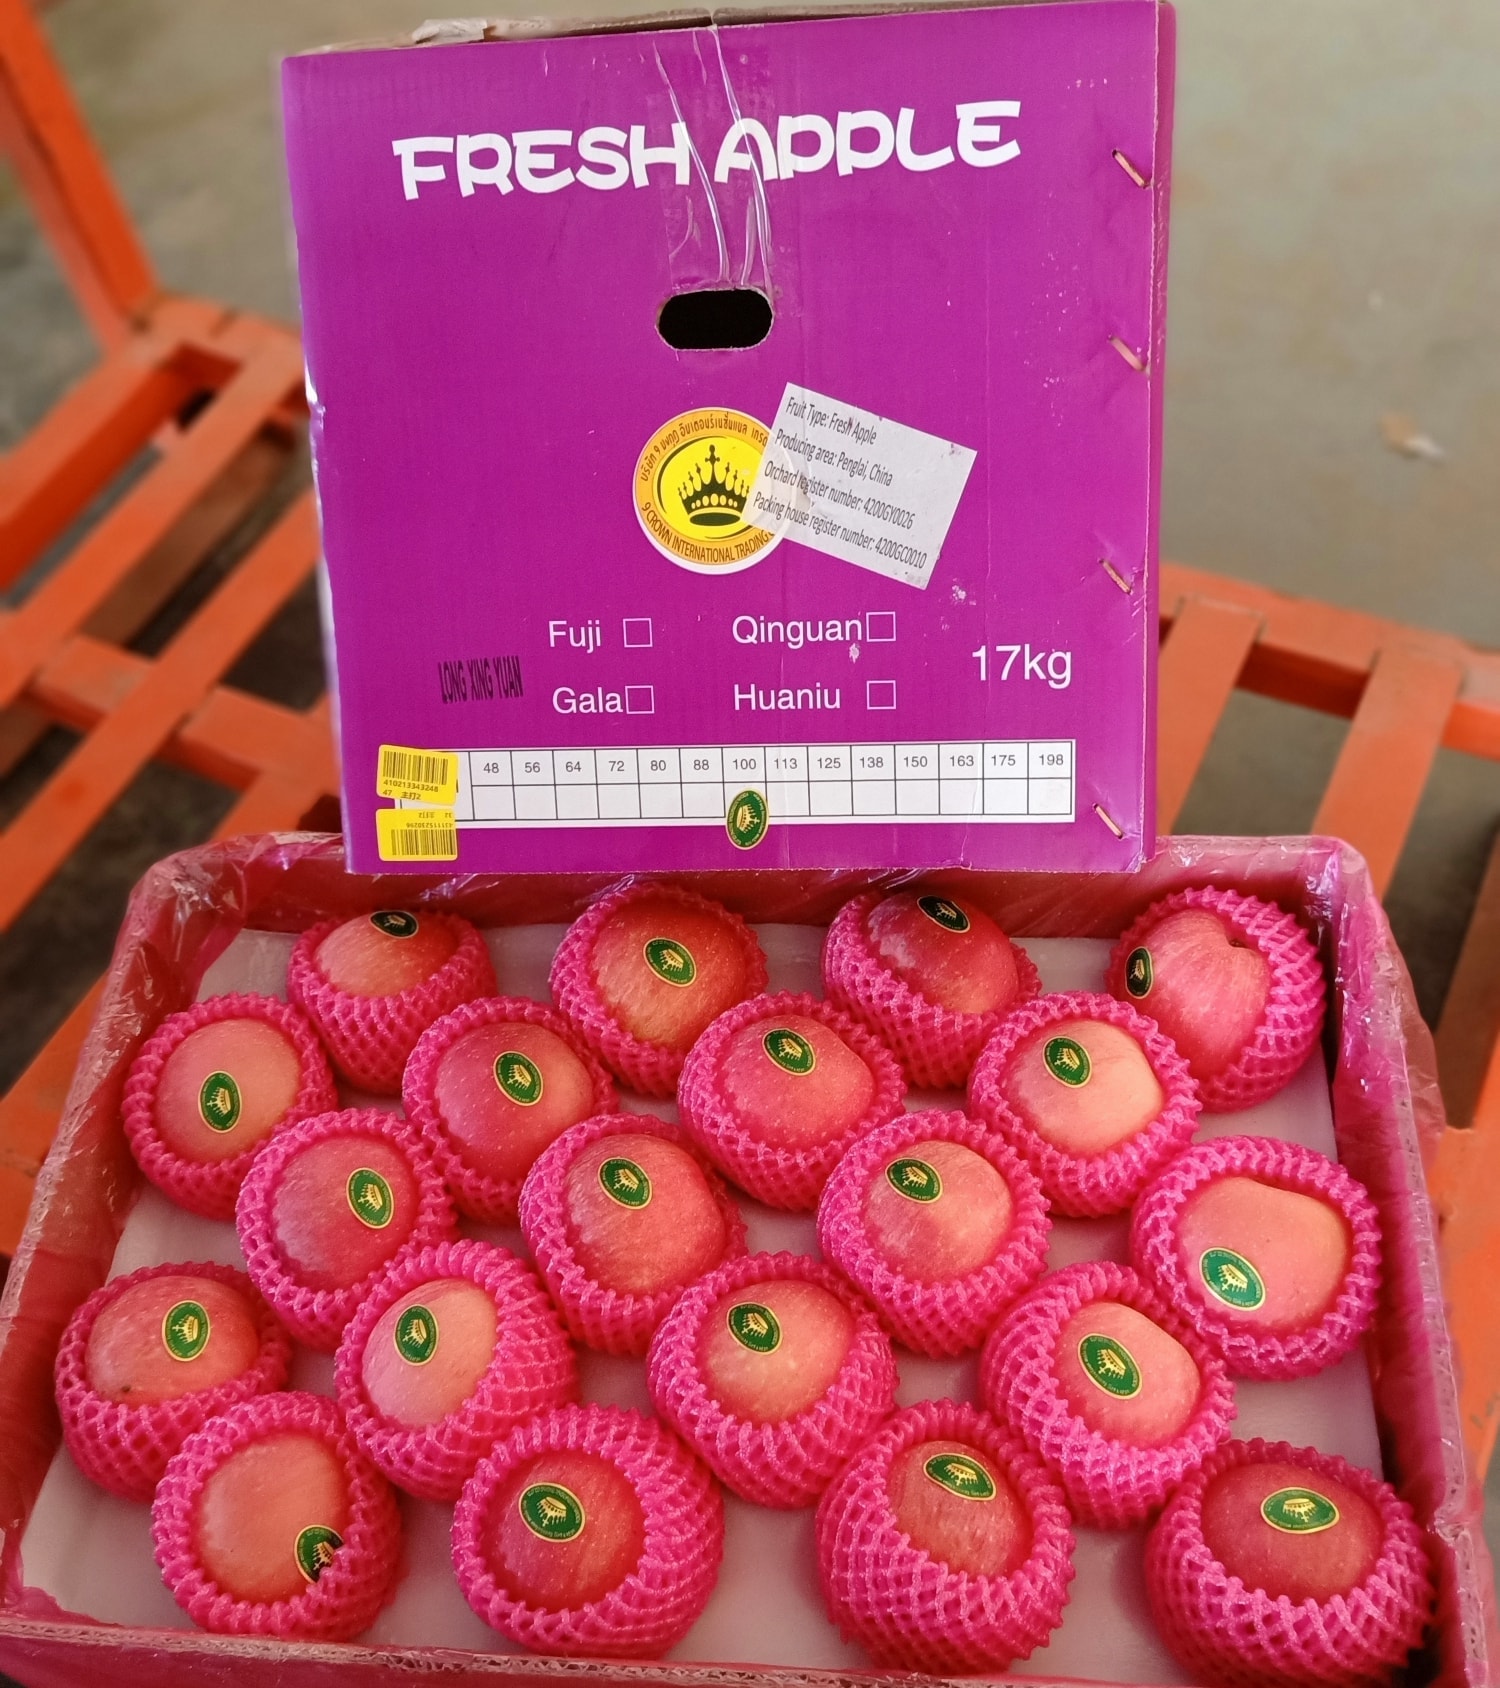 2. แอปเปิลฟูจิ (Fuji Apples) กล่องม่วง